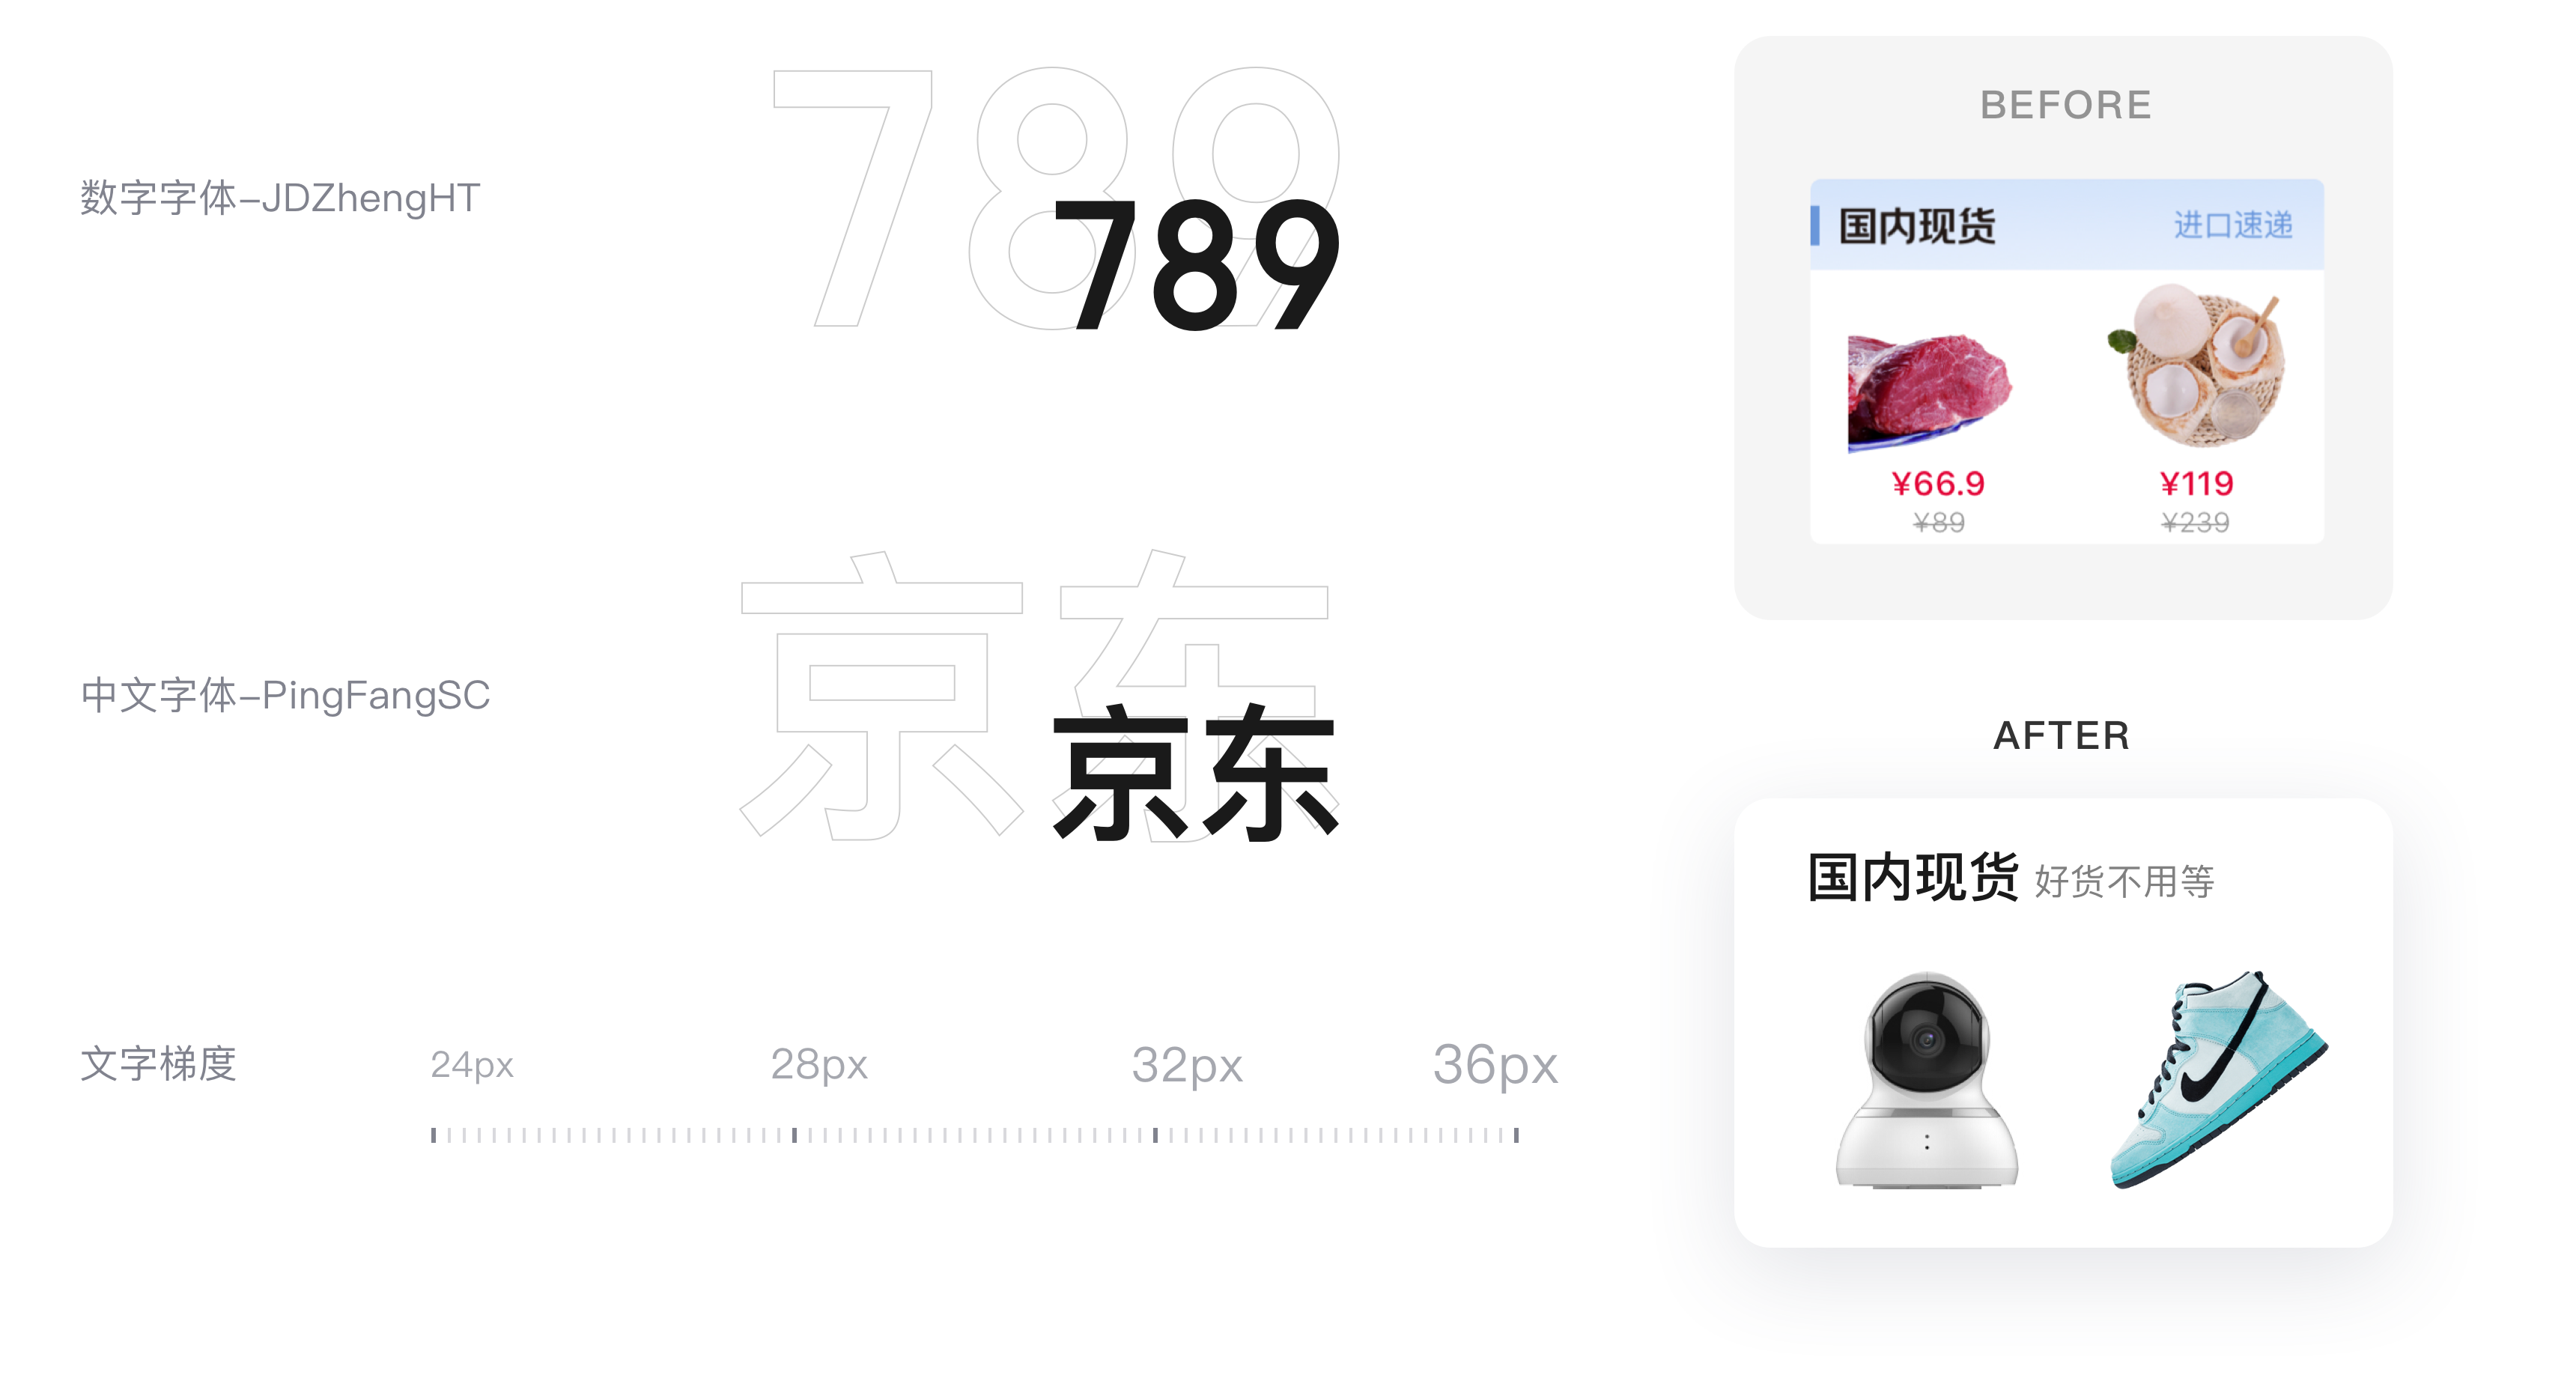 京东国际V9.0【频道品牌升级】 - 图18